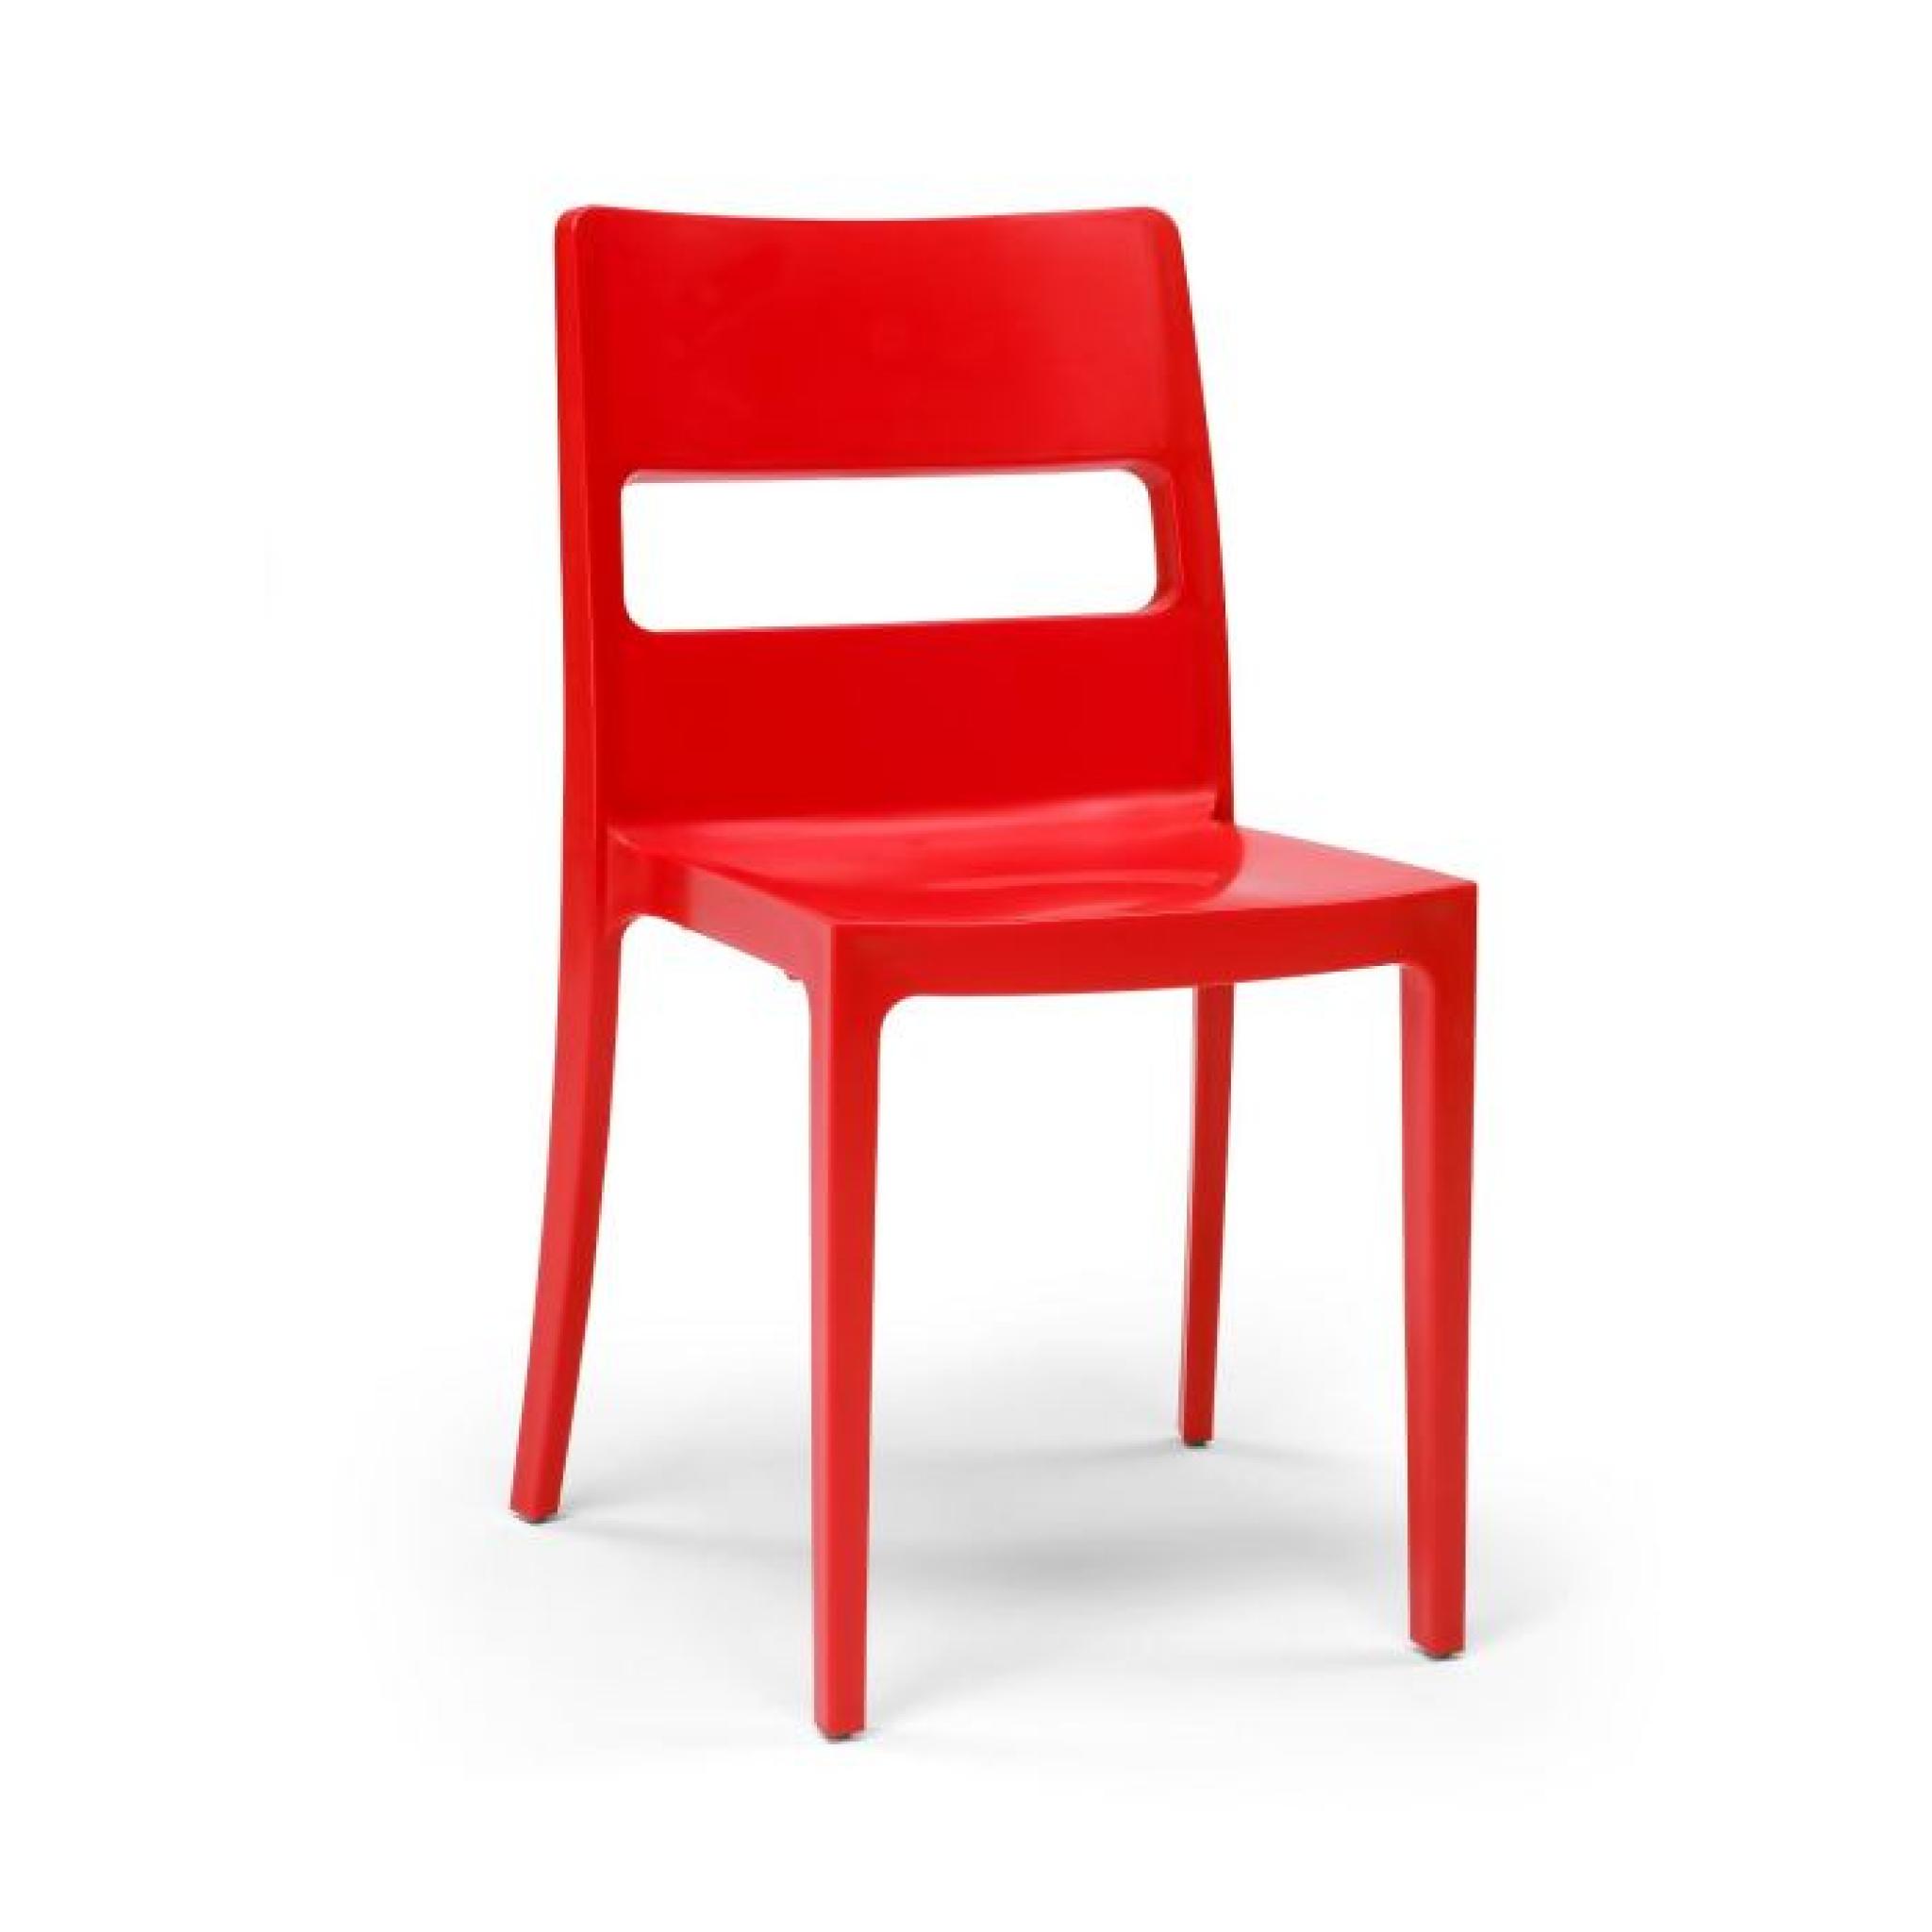 6 Chaises rouges design - SAI - Lot de 6 - déco